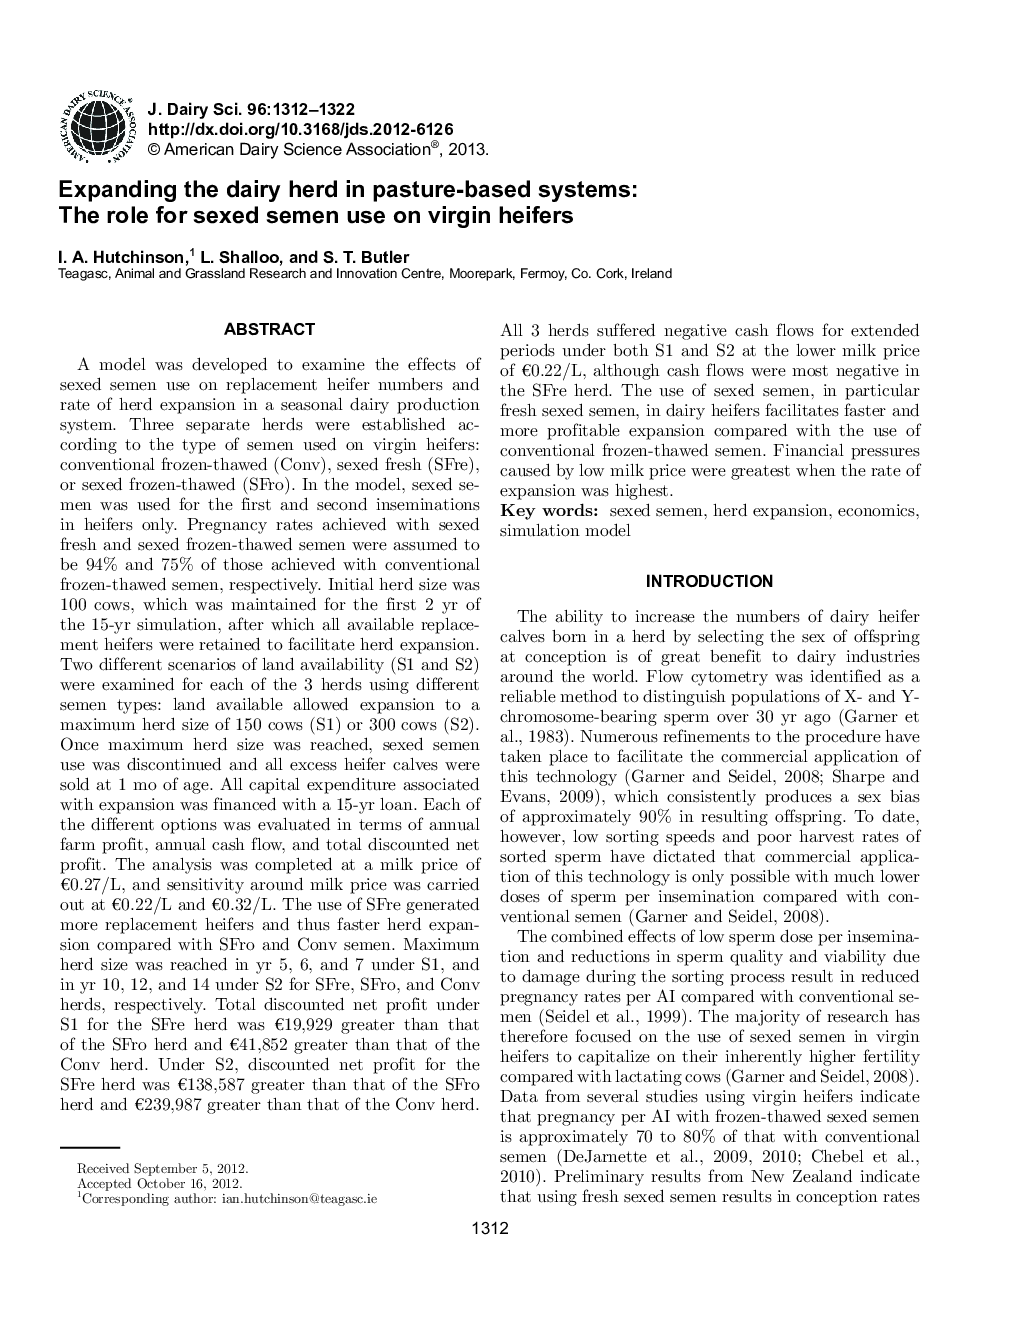 گسترش گله لبنیات در سیستم های مبتنی بر مرتع: نقش استفاده از اسپرم جنس در تلیسه های باکره 